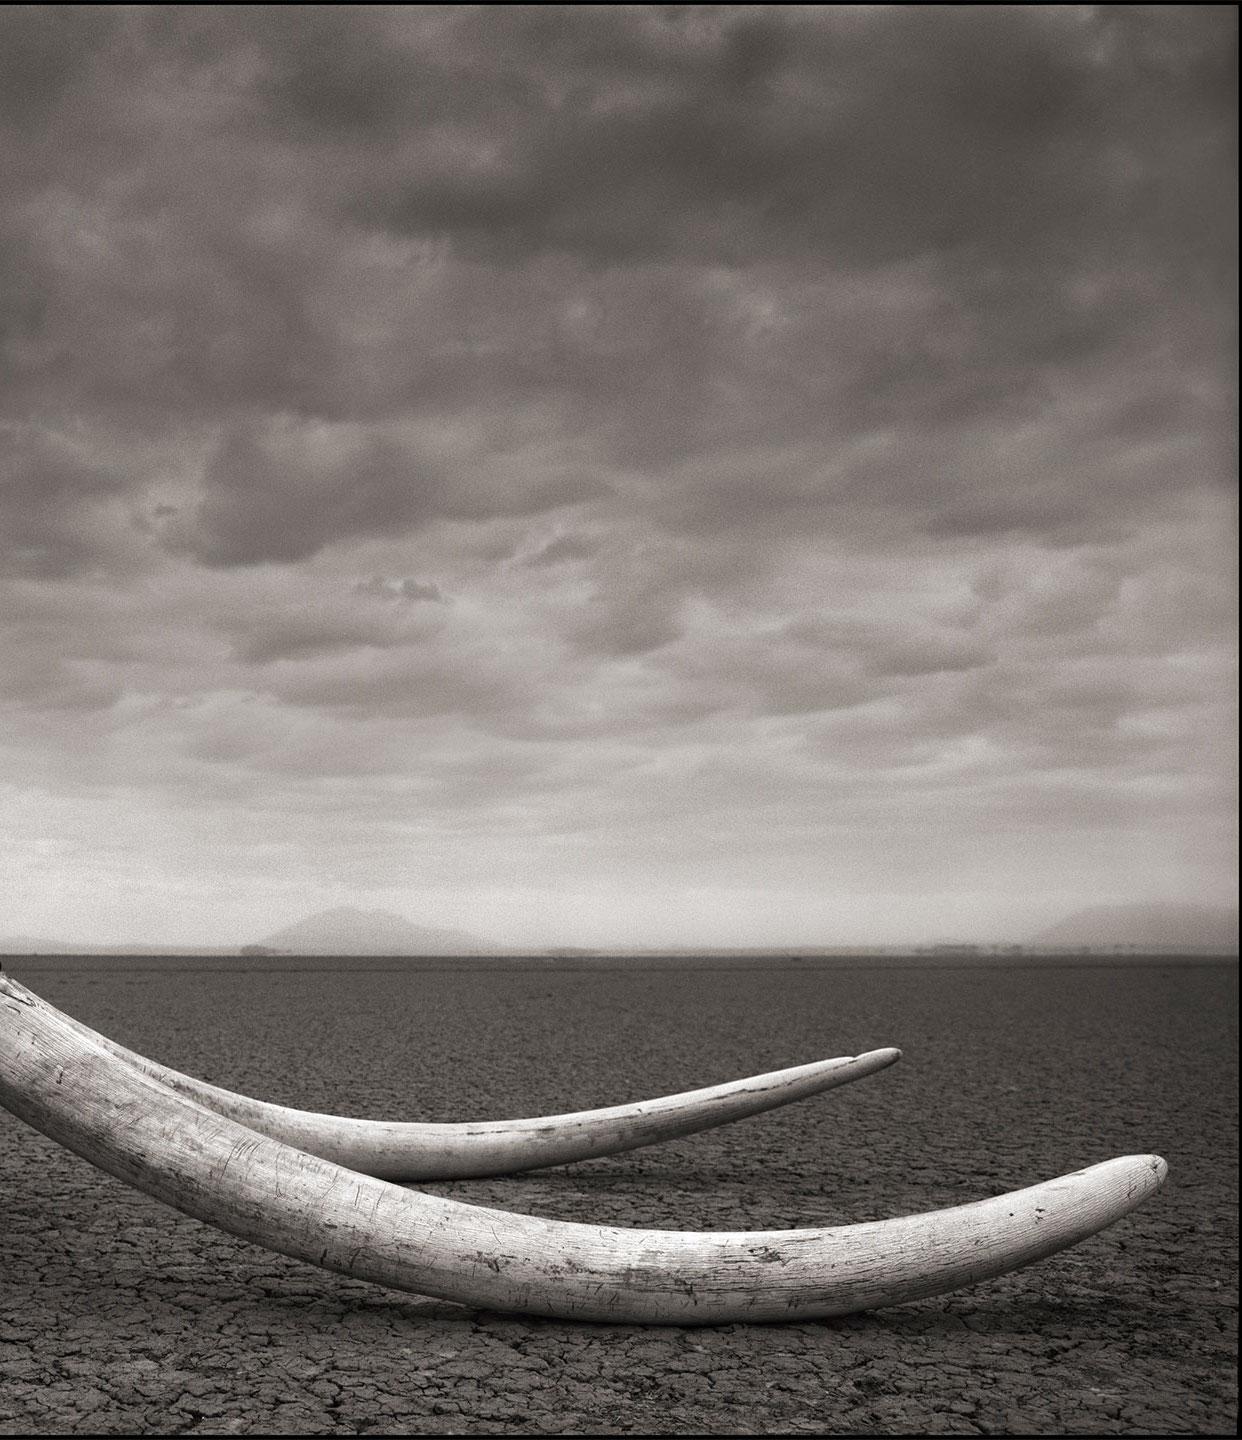 Ranger with Tusks of Killed Elephant, Amboseli – Nick Brandt, Elephant, Africa 2